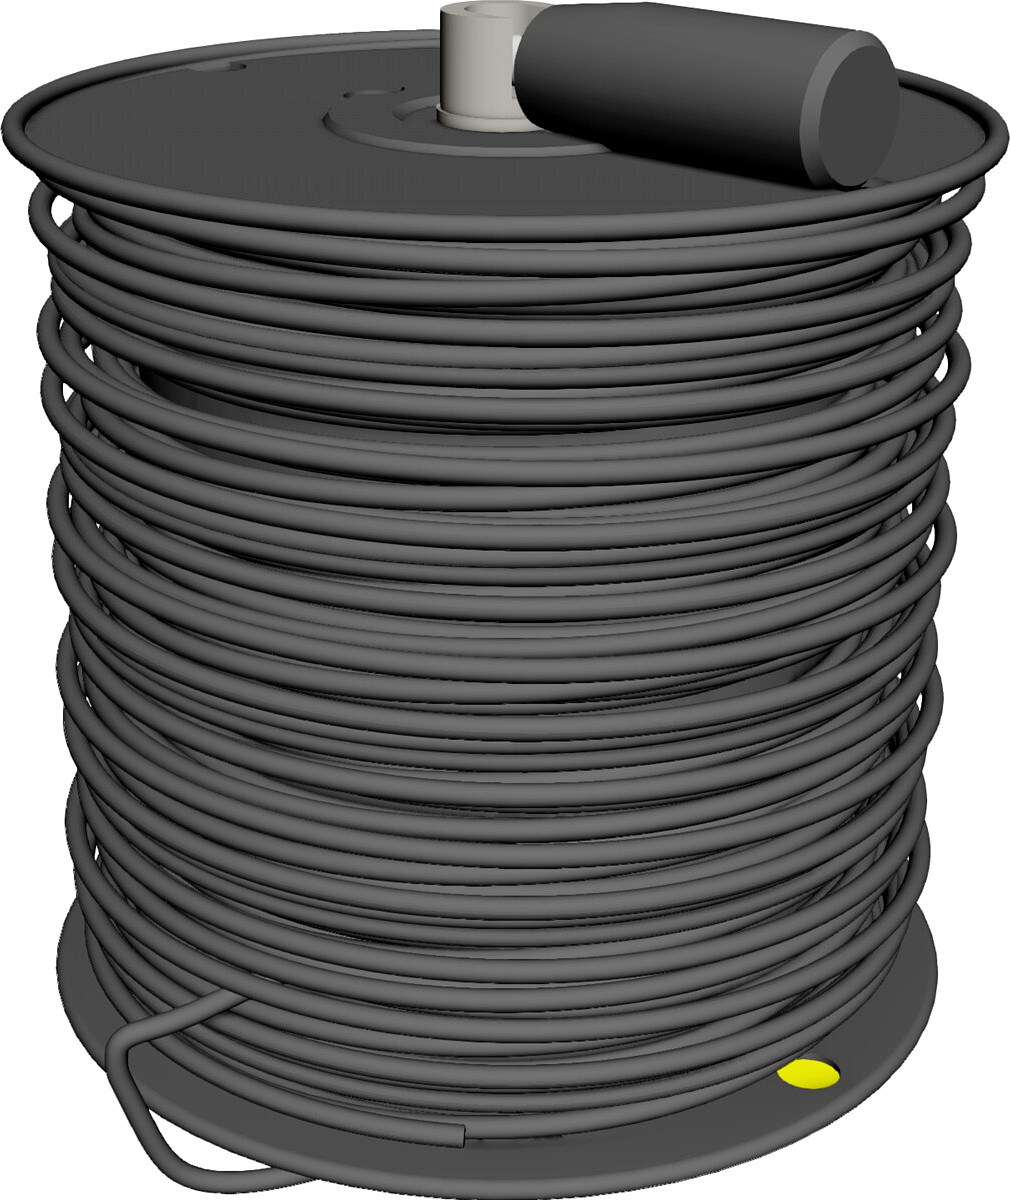 Fiber Optic Cable 3D CAD Model